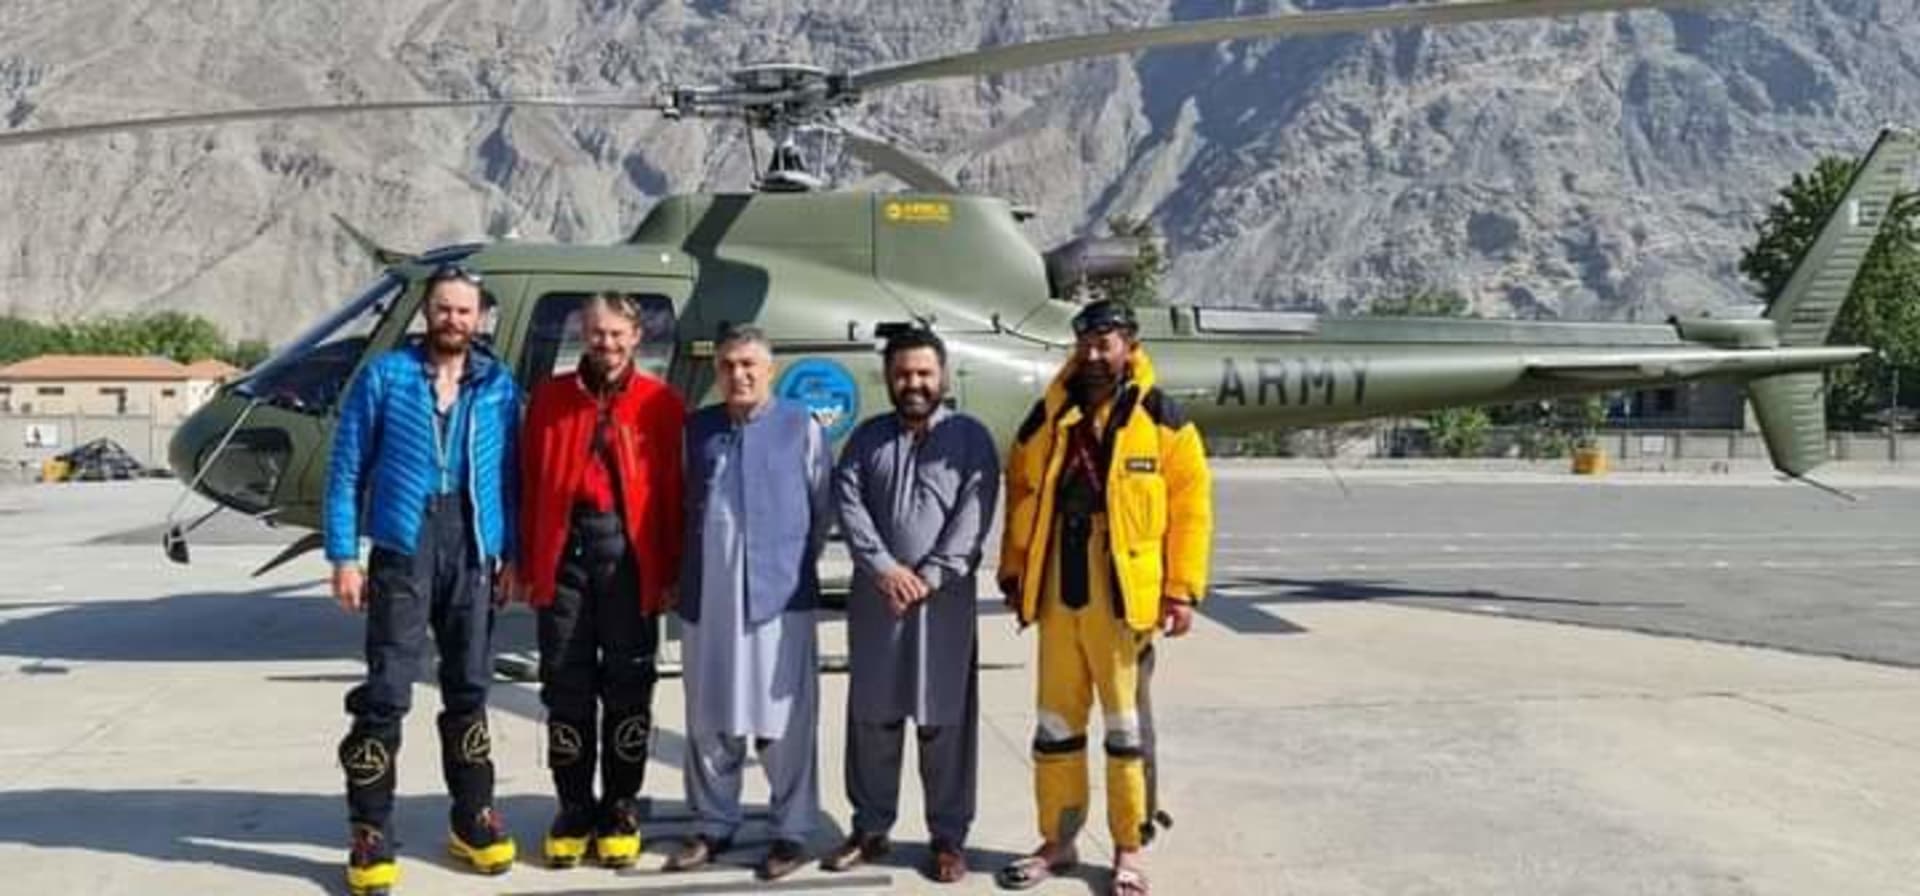 Horolezce Jakuba Vlčka a Petra Macka musel společně s jejich pákistánským kolegou na hoře Rakapoši zachraňovat vrtulník.